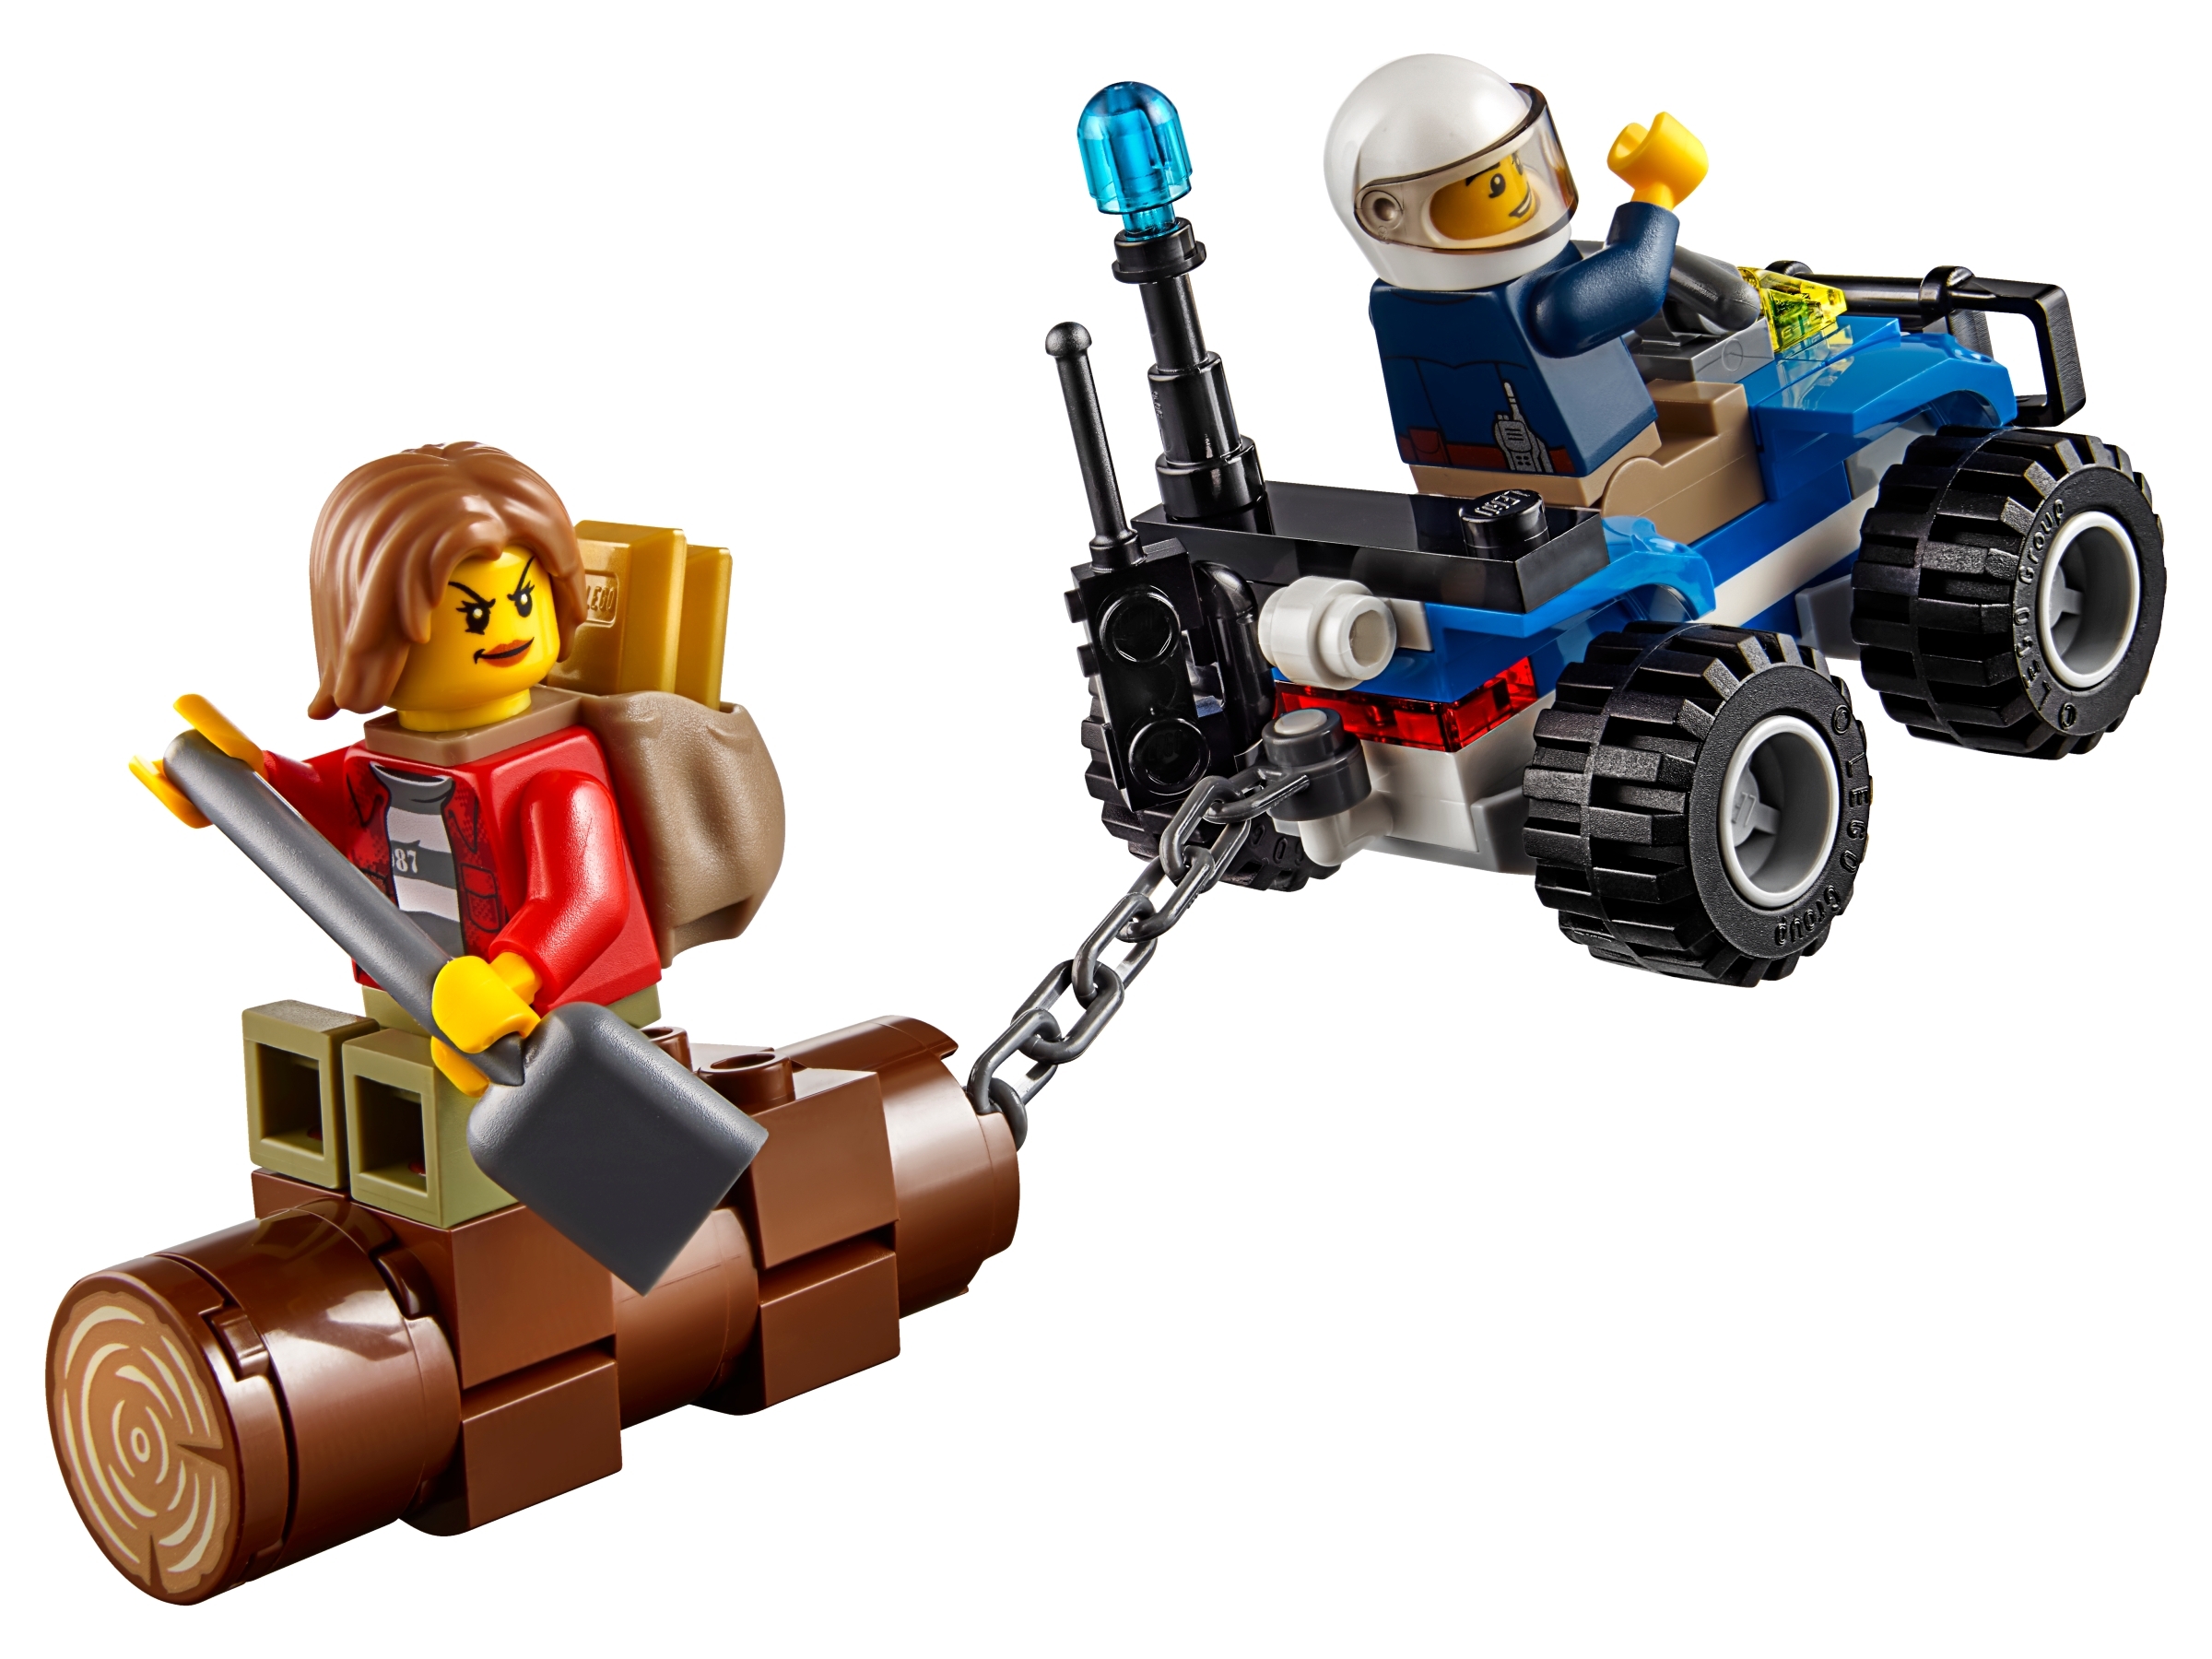 Lego Set 60171 City Mountain Fugitives Police Chase NEW Sealed Free Shipping 